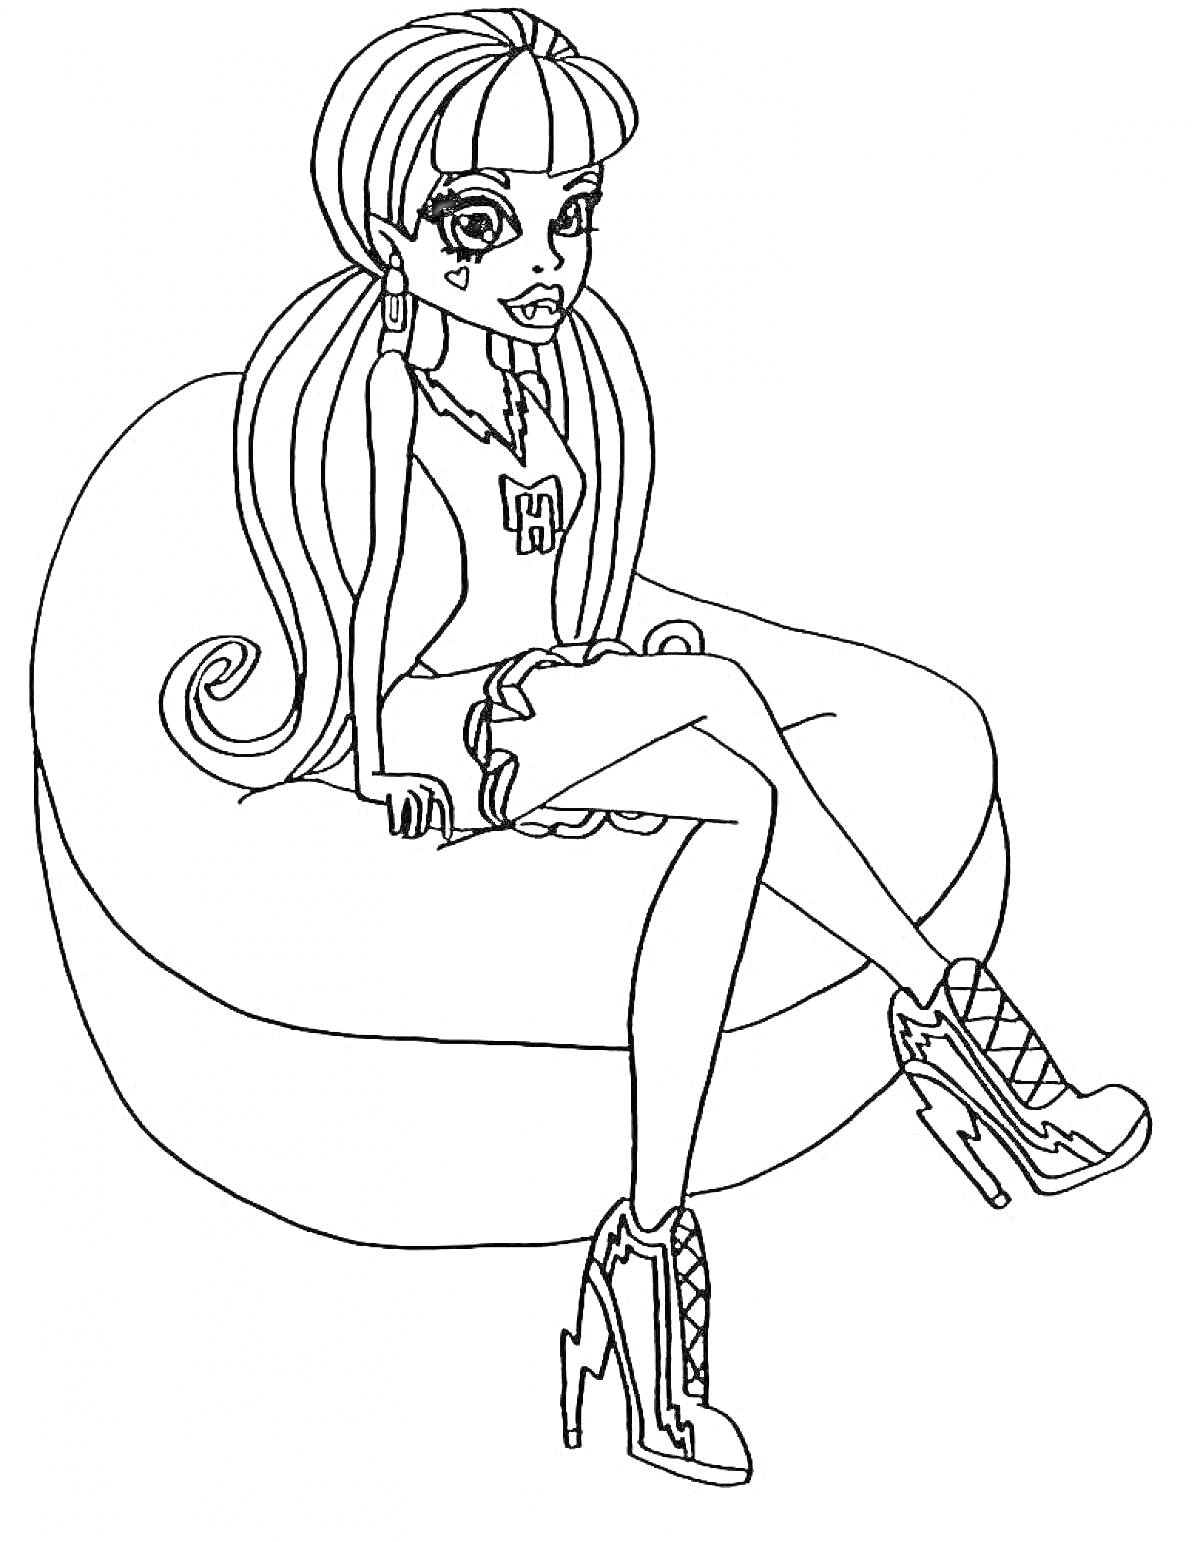 Раскраска Девушка из Монстер Хай с длинными волосами и чёлкой, сидящая на пуфе в туфлях на высоком каблуке